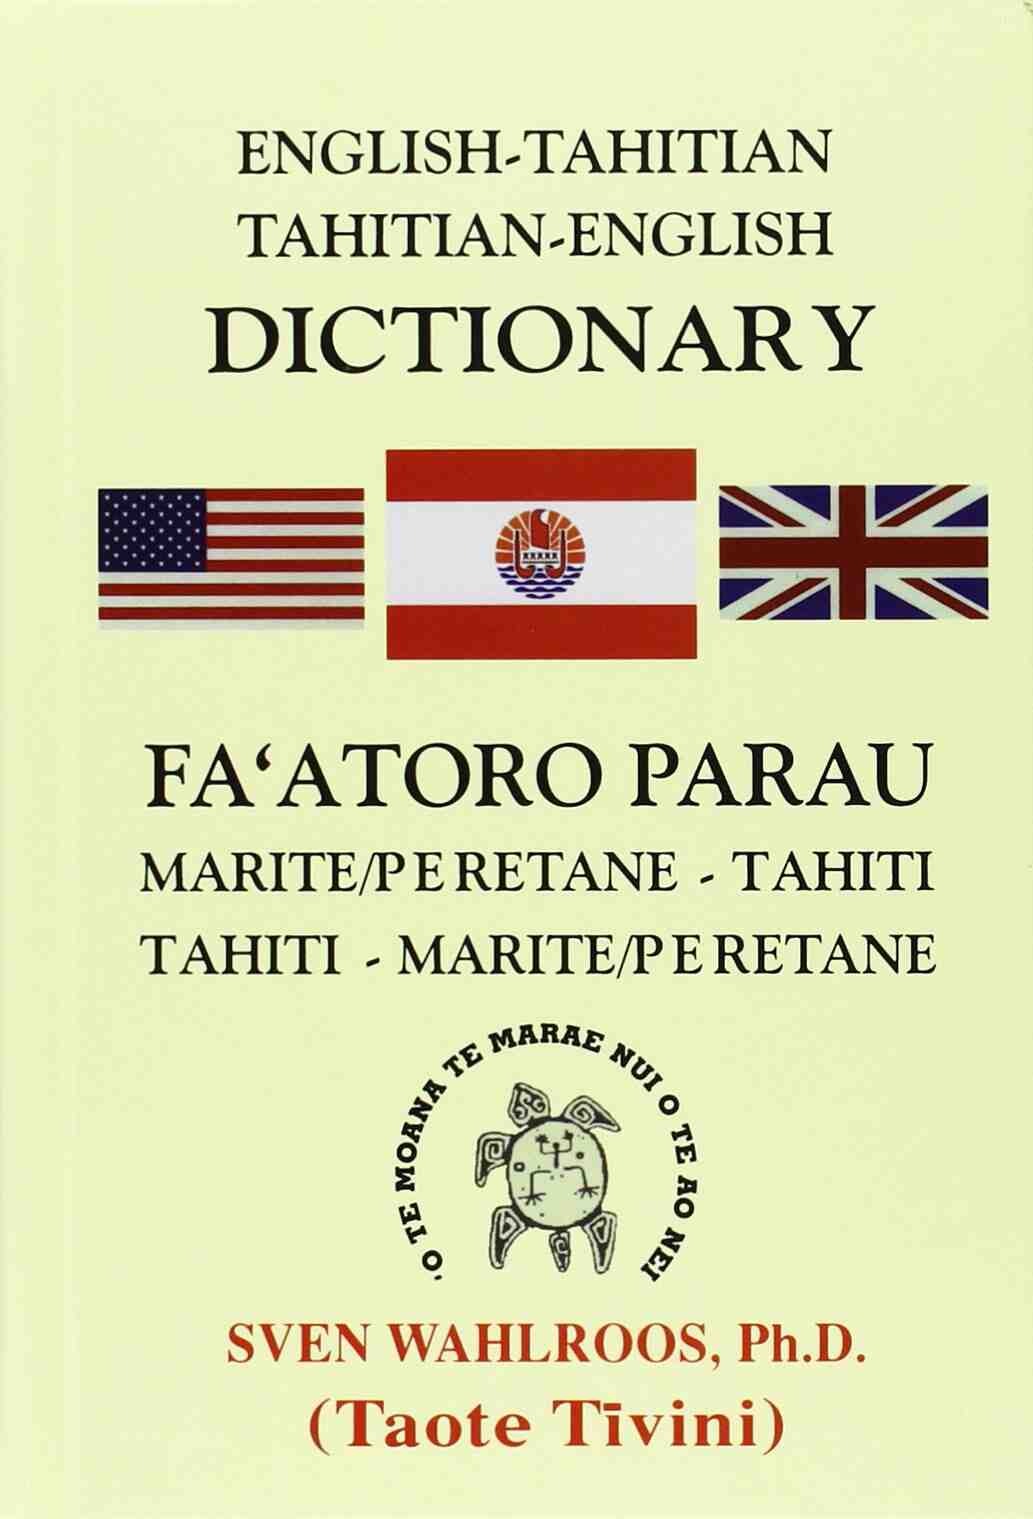 Galerie image 4 : Quelle est la langue parlée en Tahiti ?